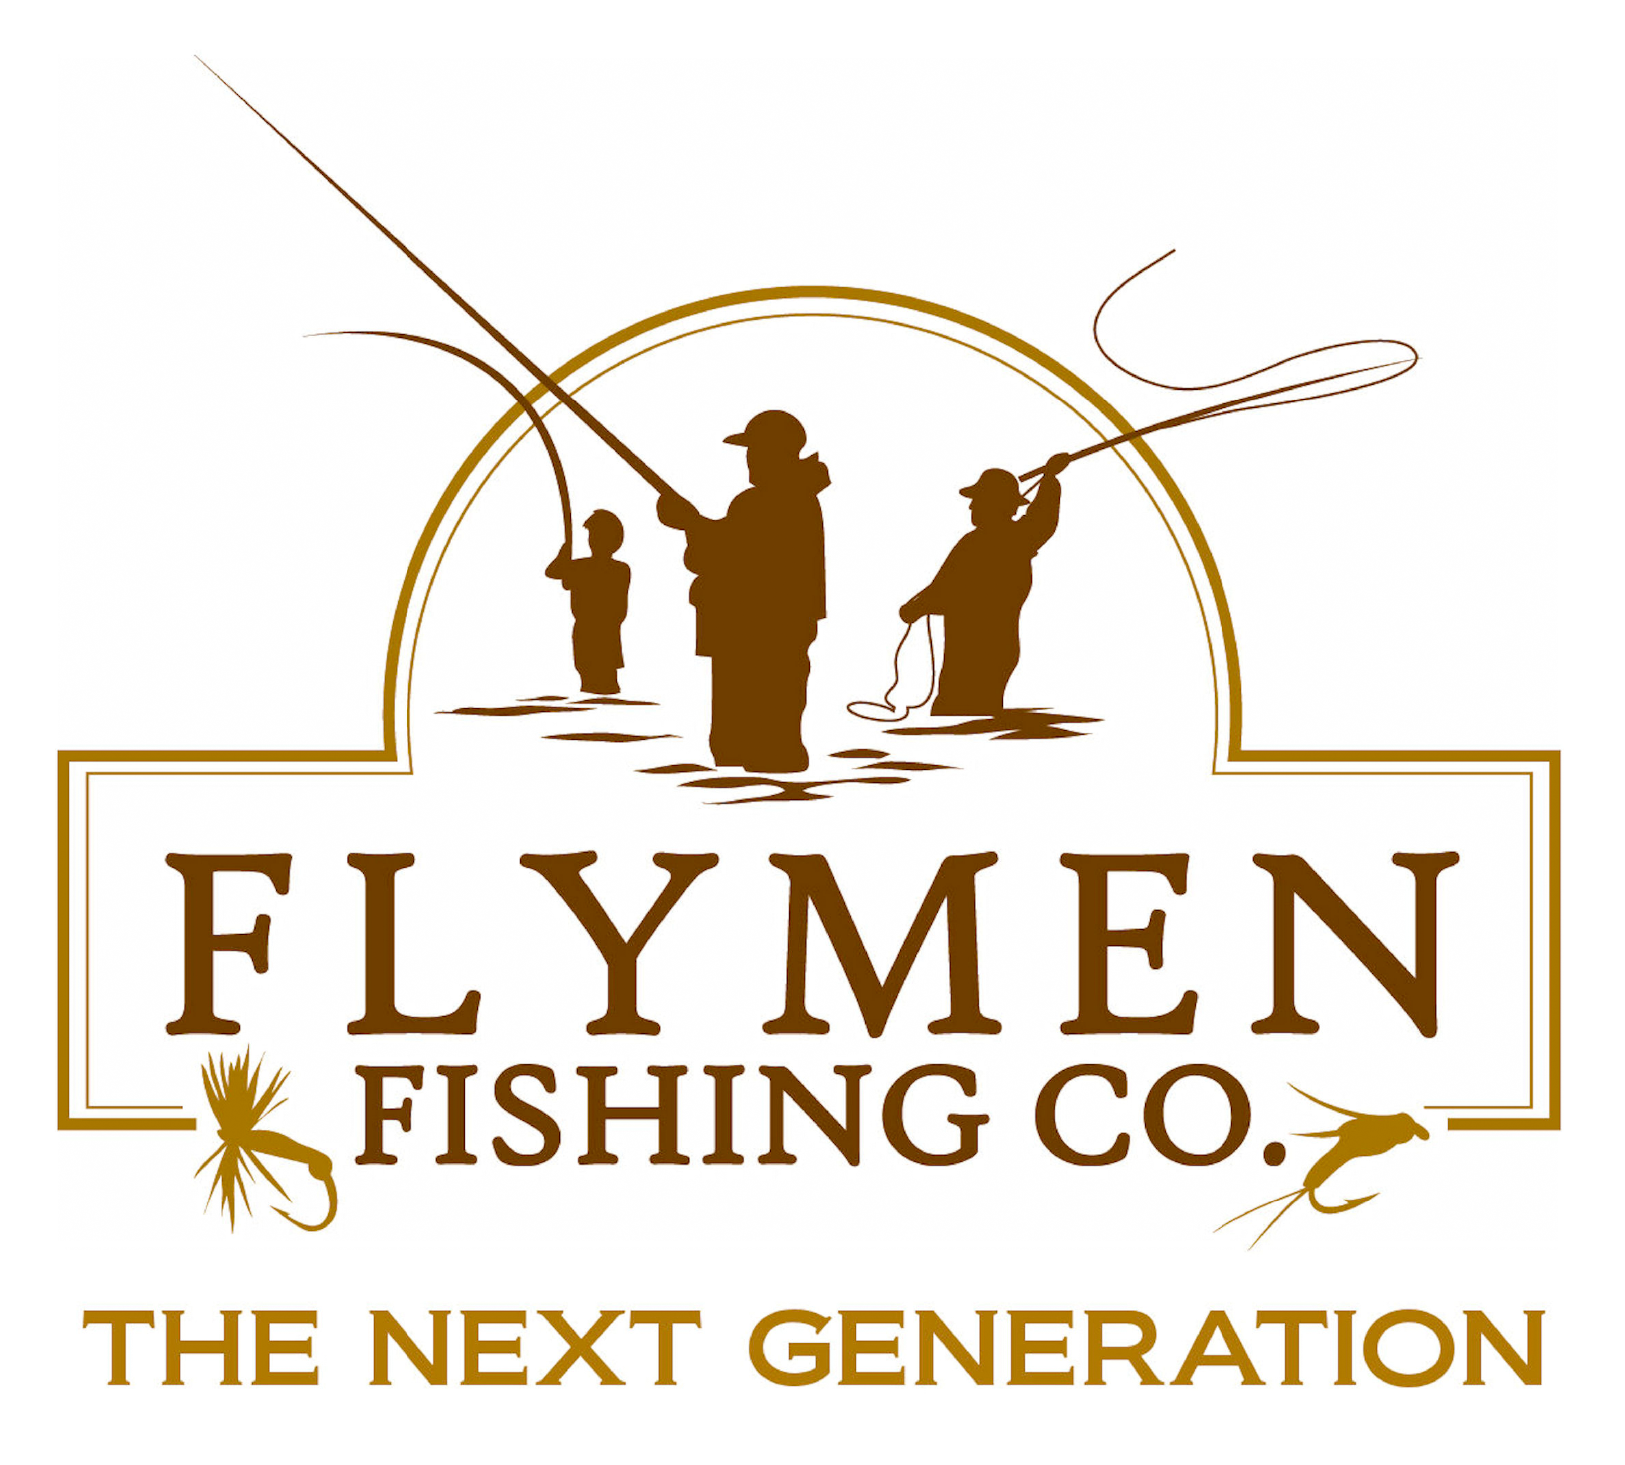 Flyman Fishing Co.